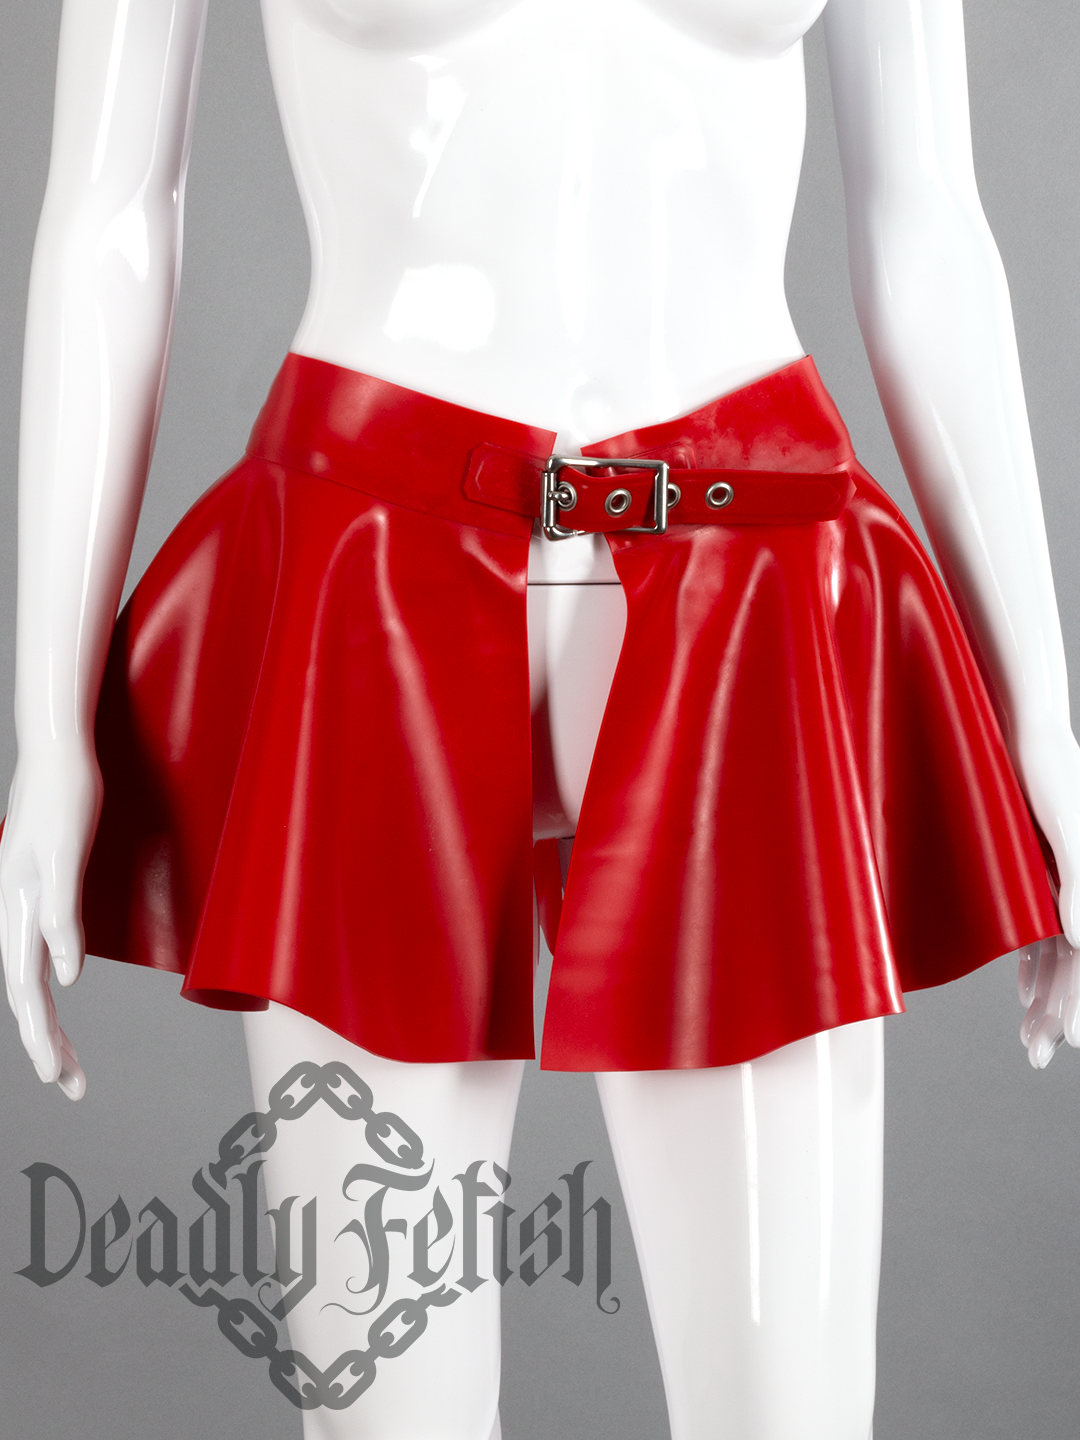 Deadly Fetish Latex: Skirt #10